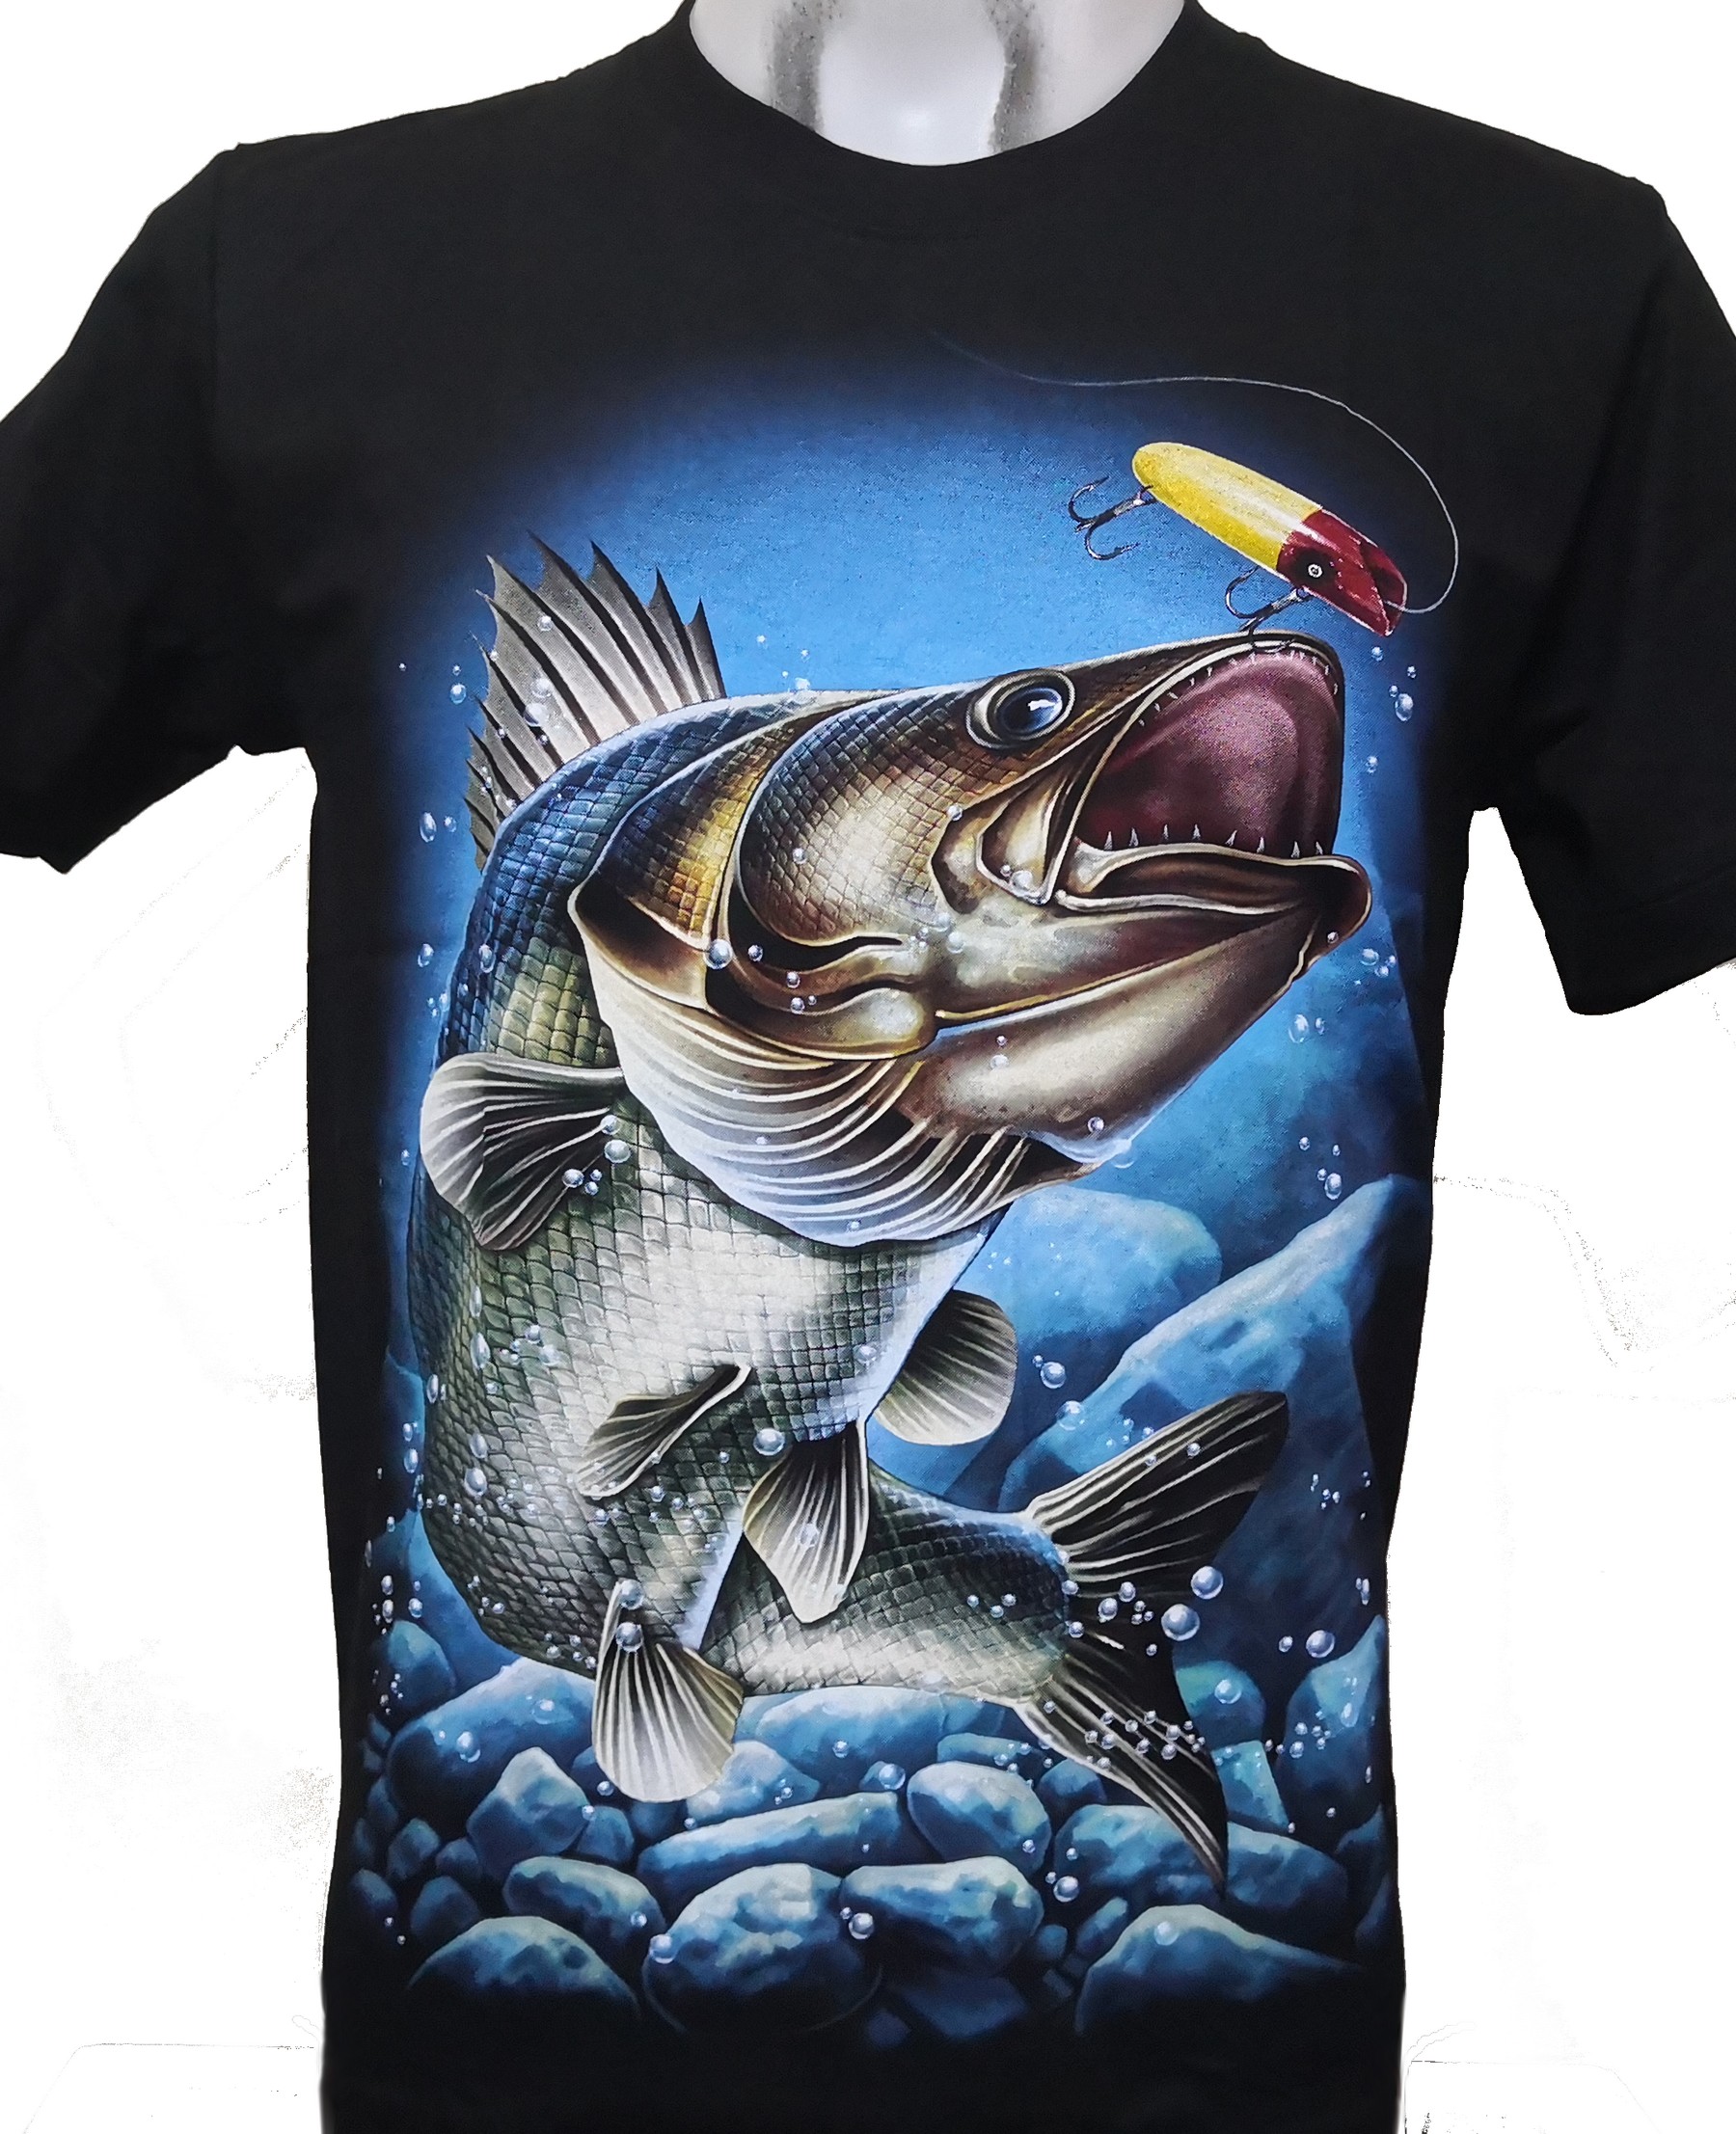 Fish t-shirt size L – RoxxBKK